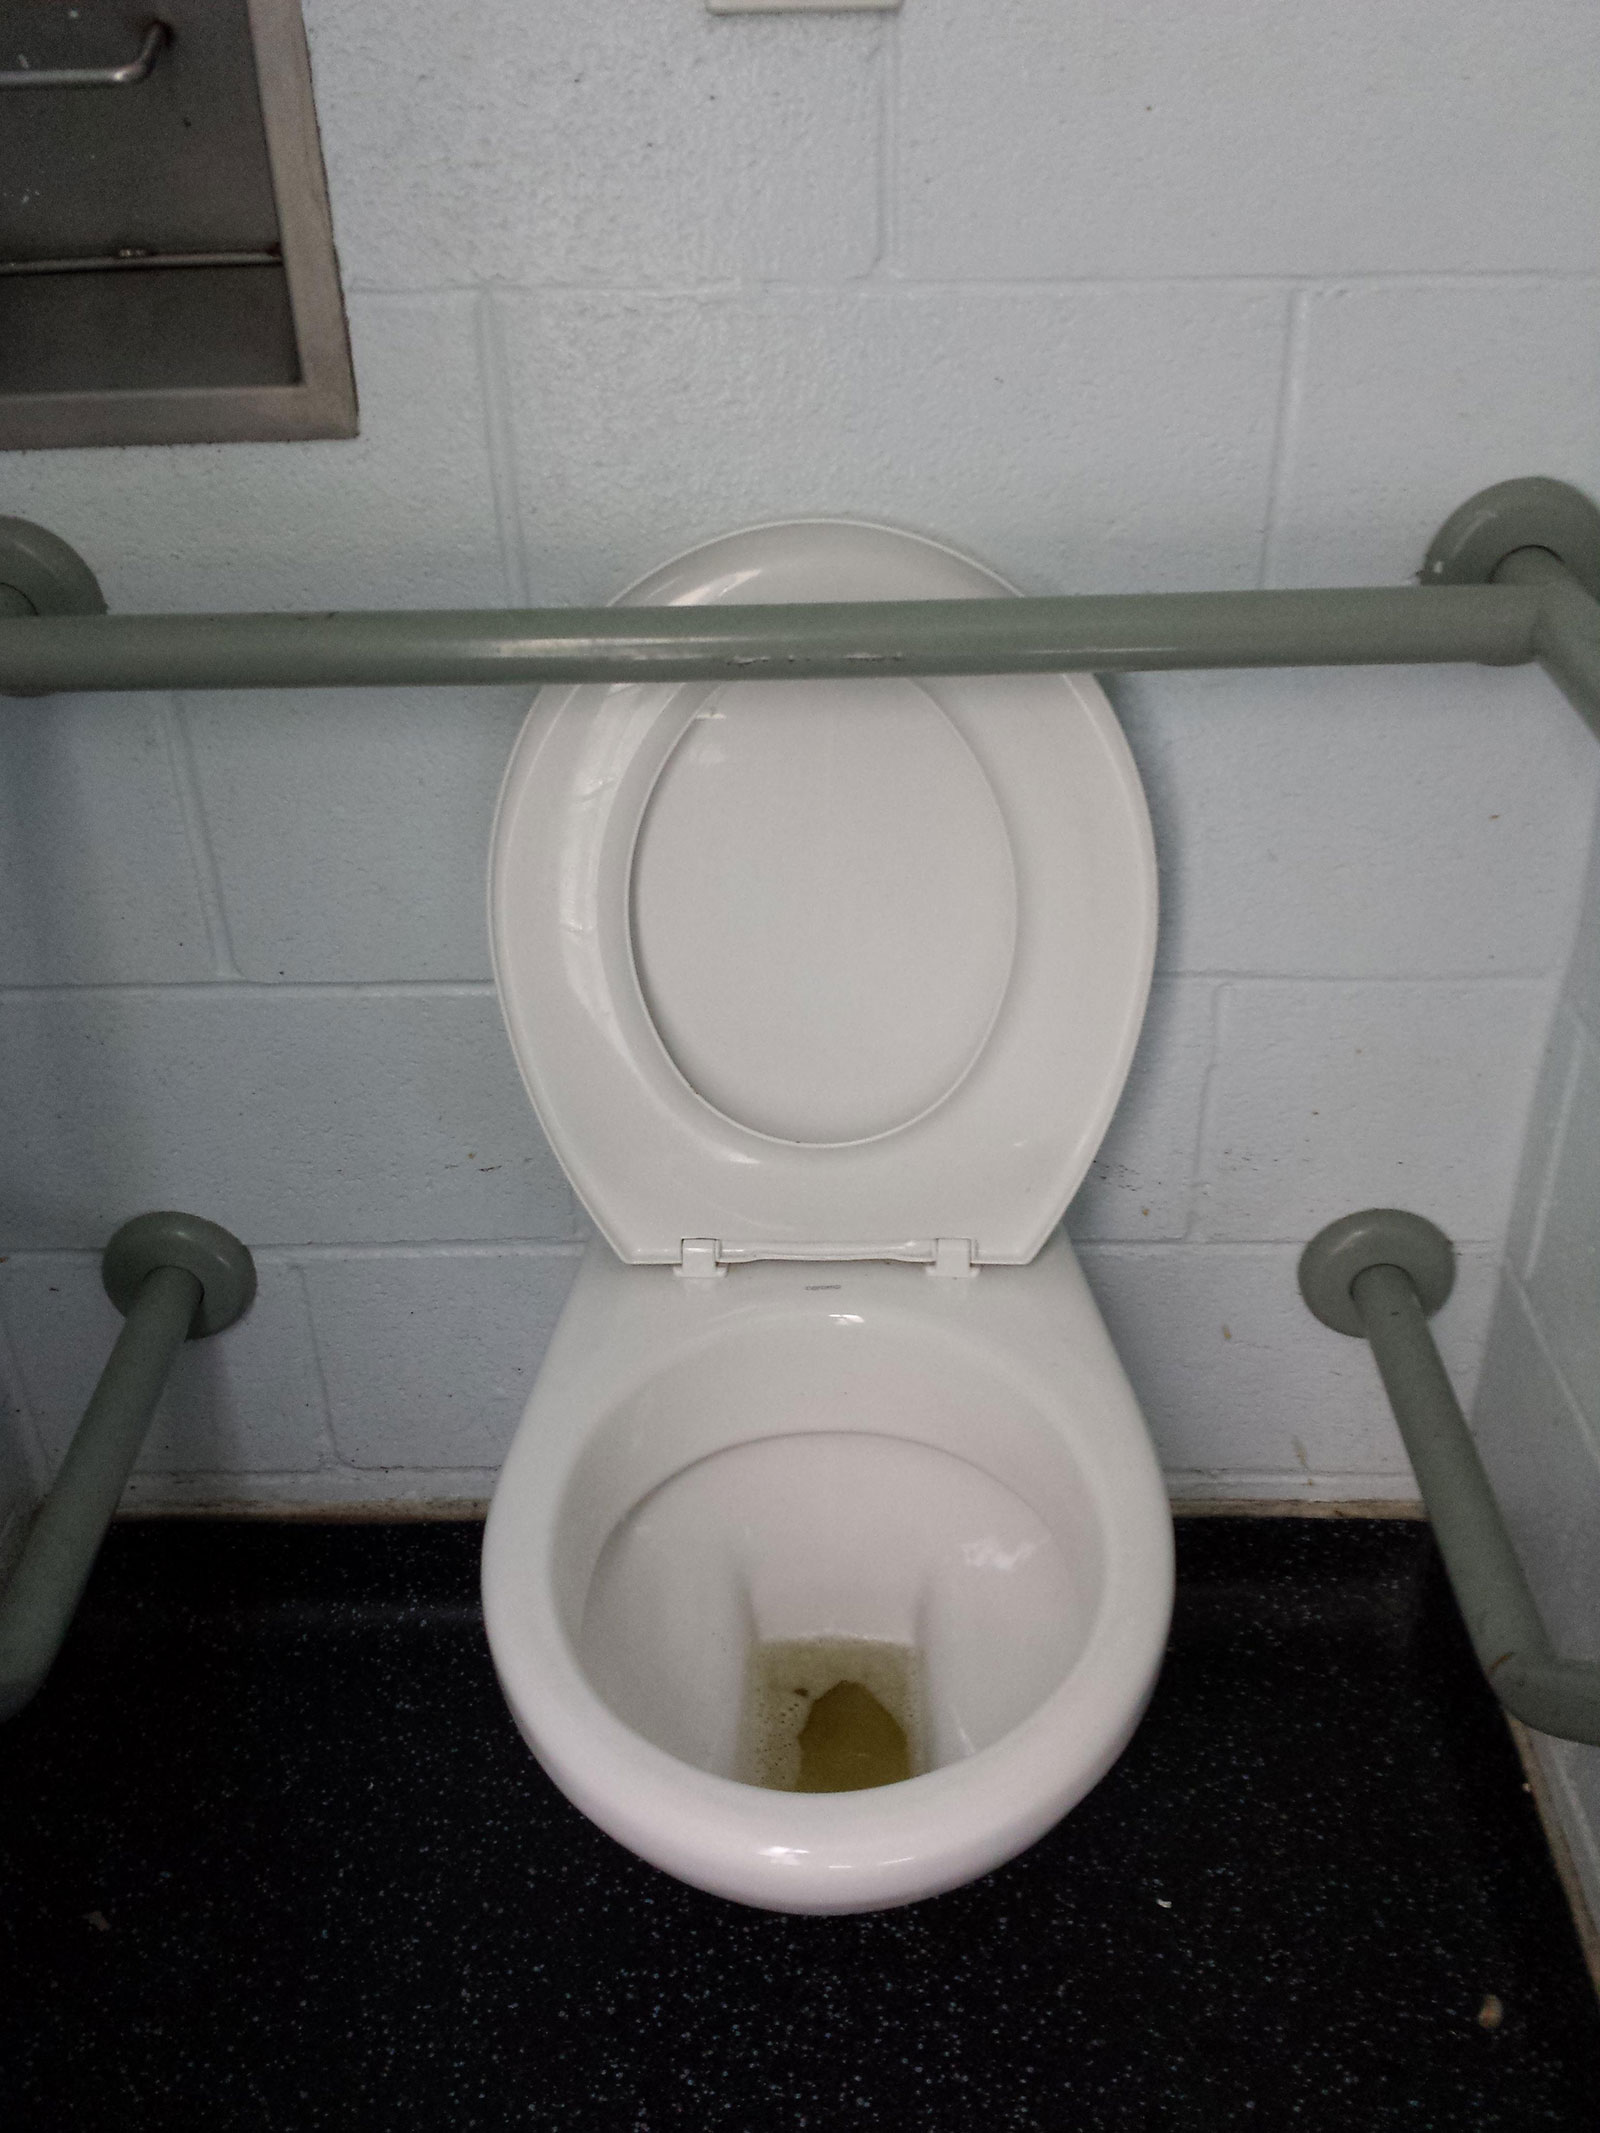 This useless toilet seat